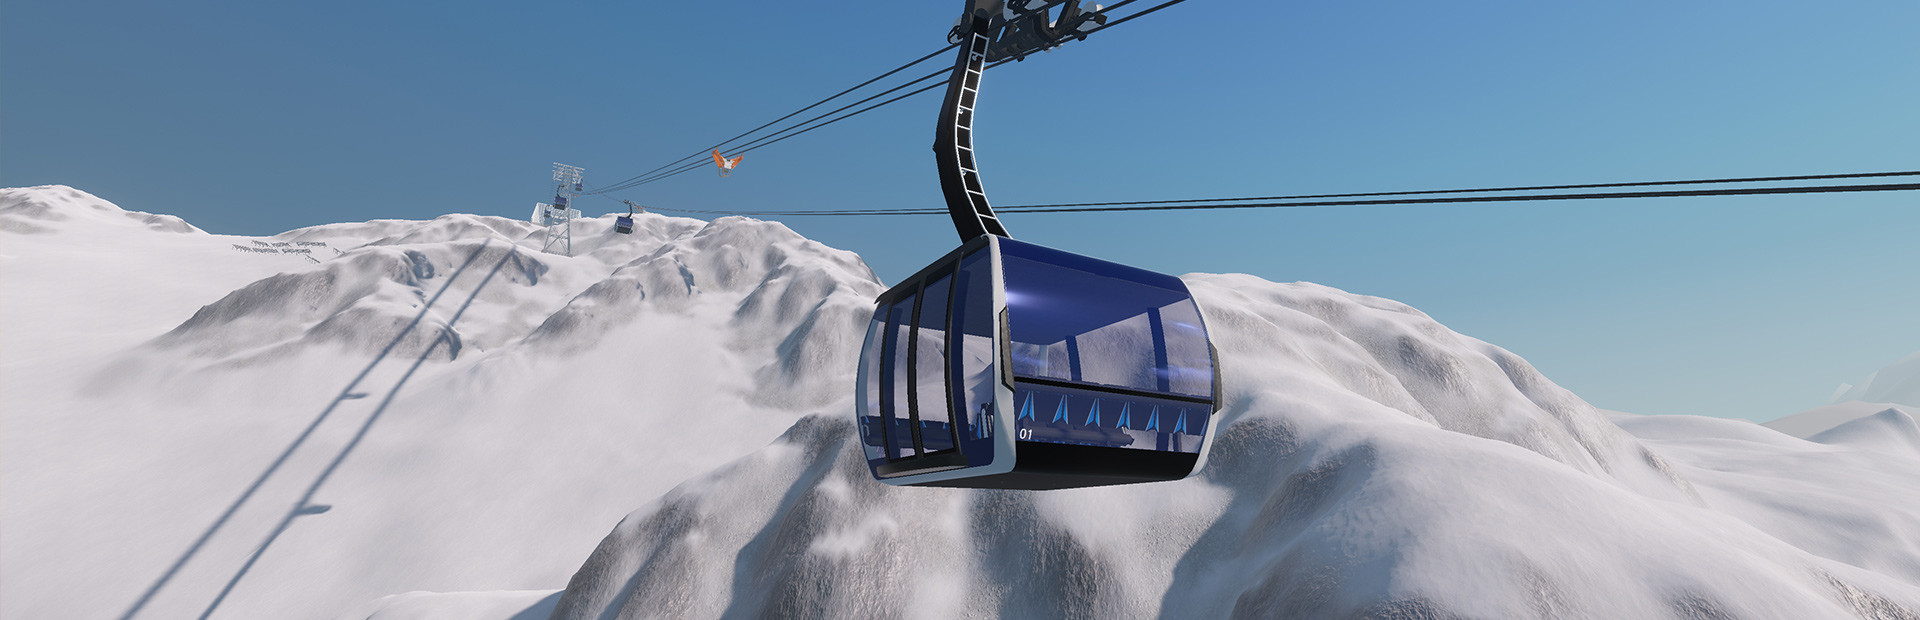 Winter Resort Simulator cover image